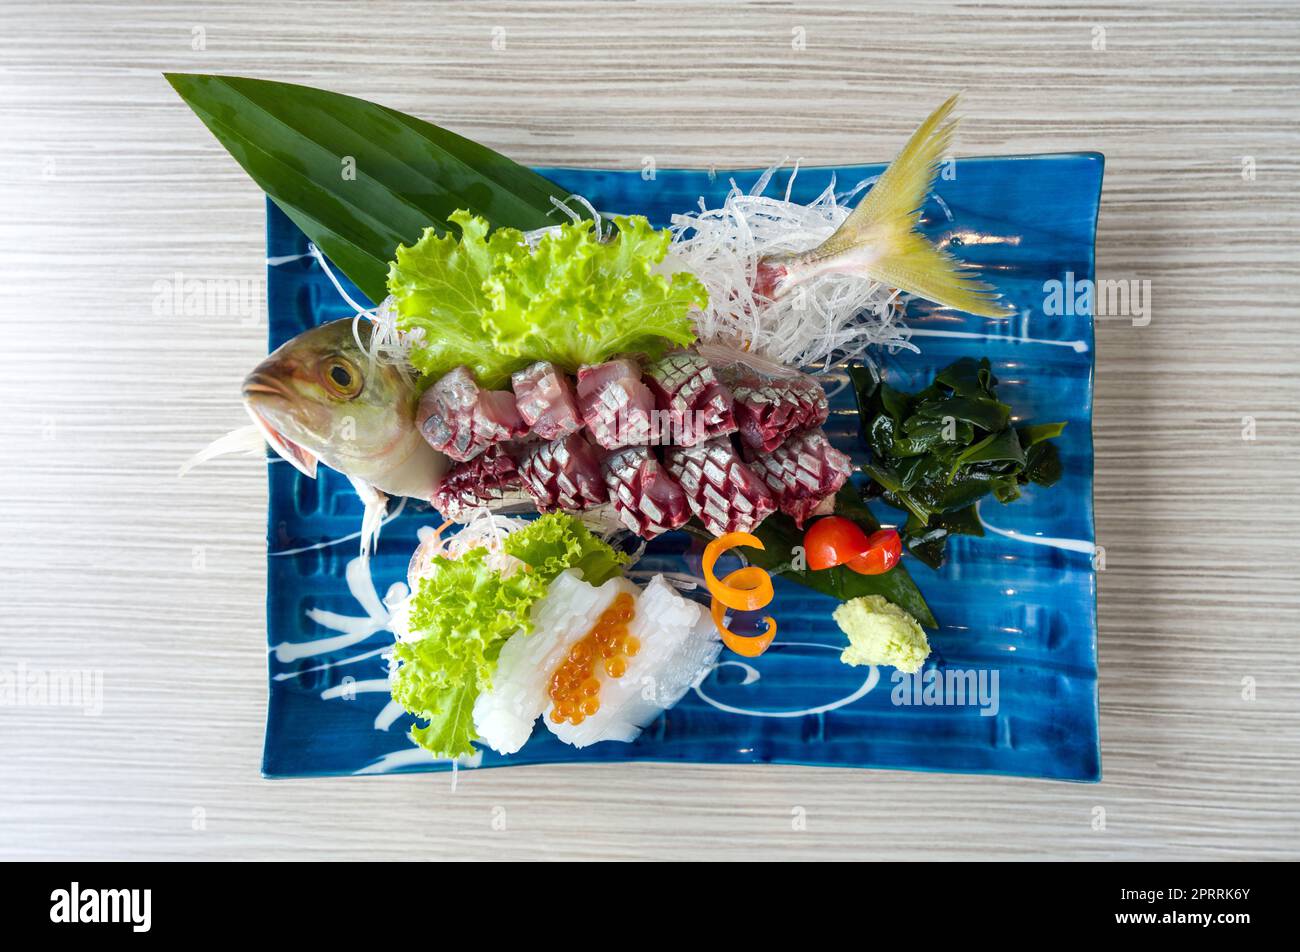 Aji Sashimi, jurel fresco en rodajas servido con Ika y Salmón Roe decorado con lechuga verde y rábano rallado. Buffet de cocina japonesa. Foto de stock